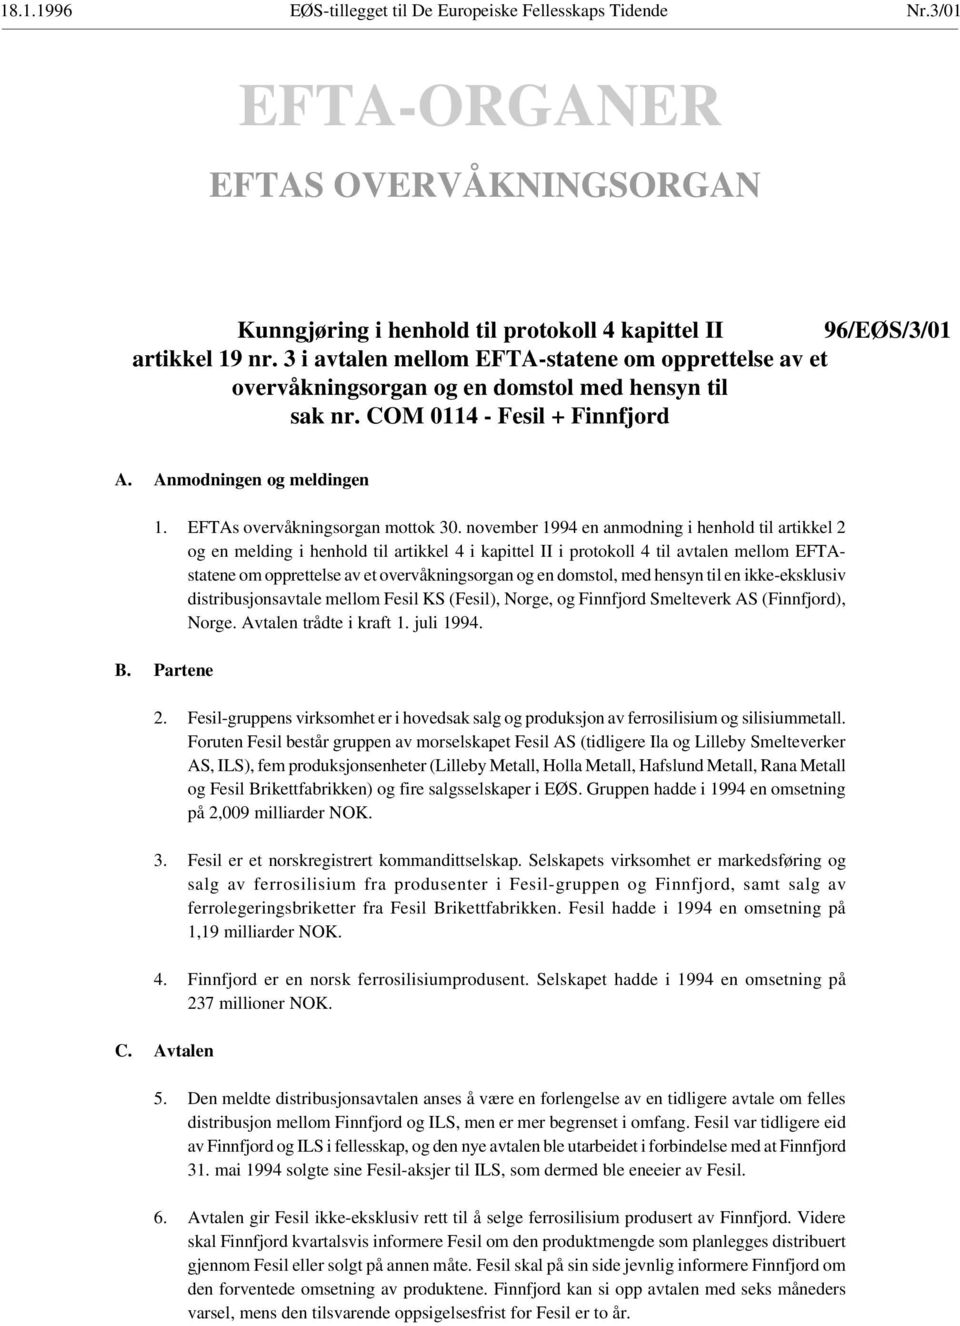 EFTAs overvåkningsorgan mottok 30.